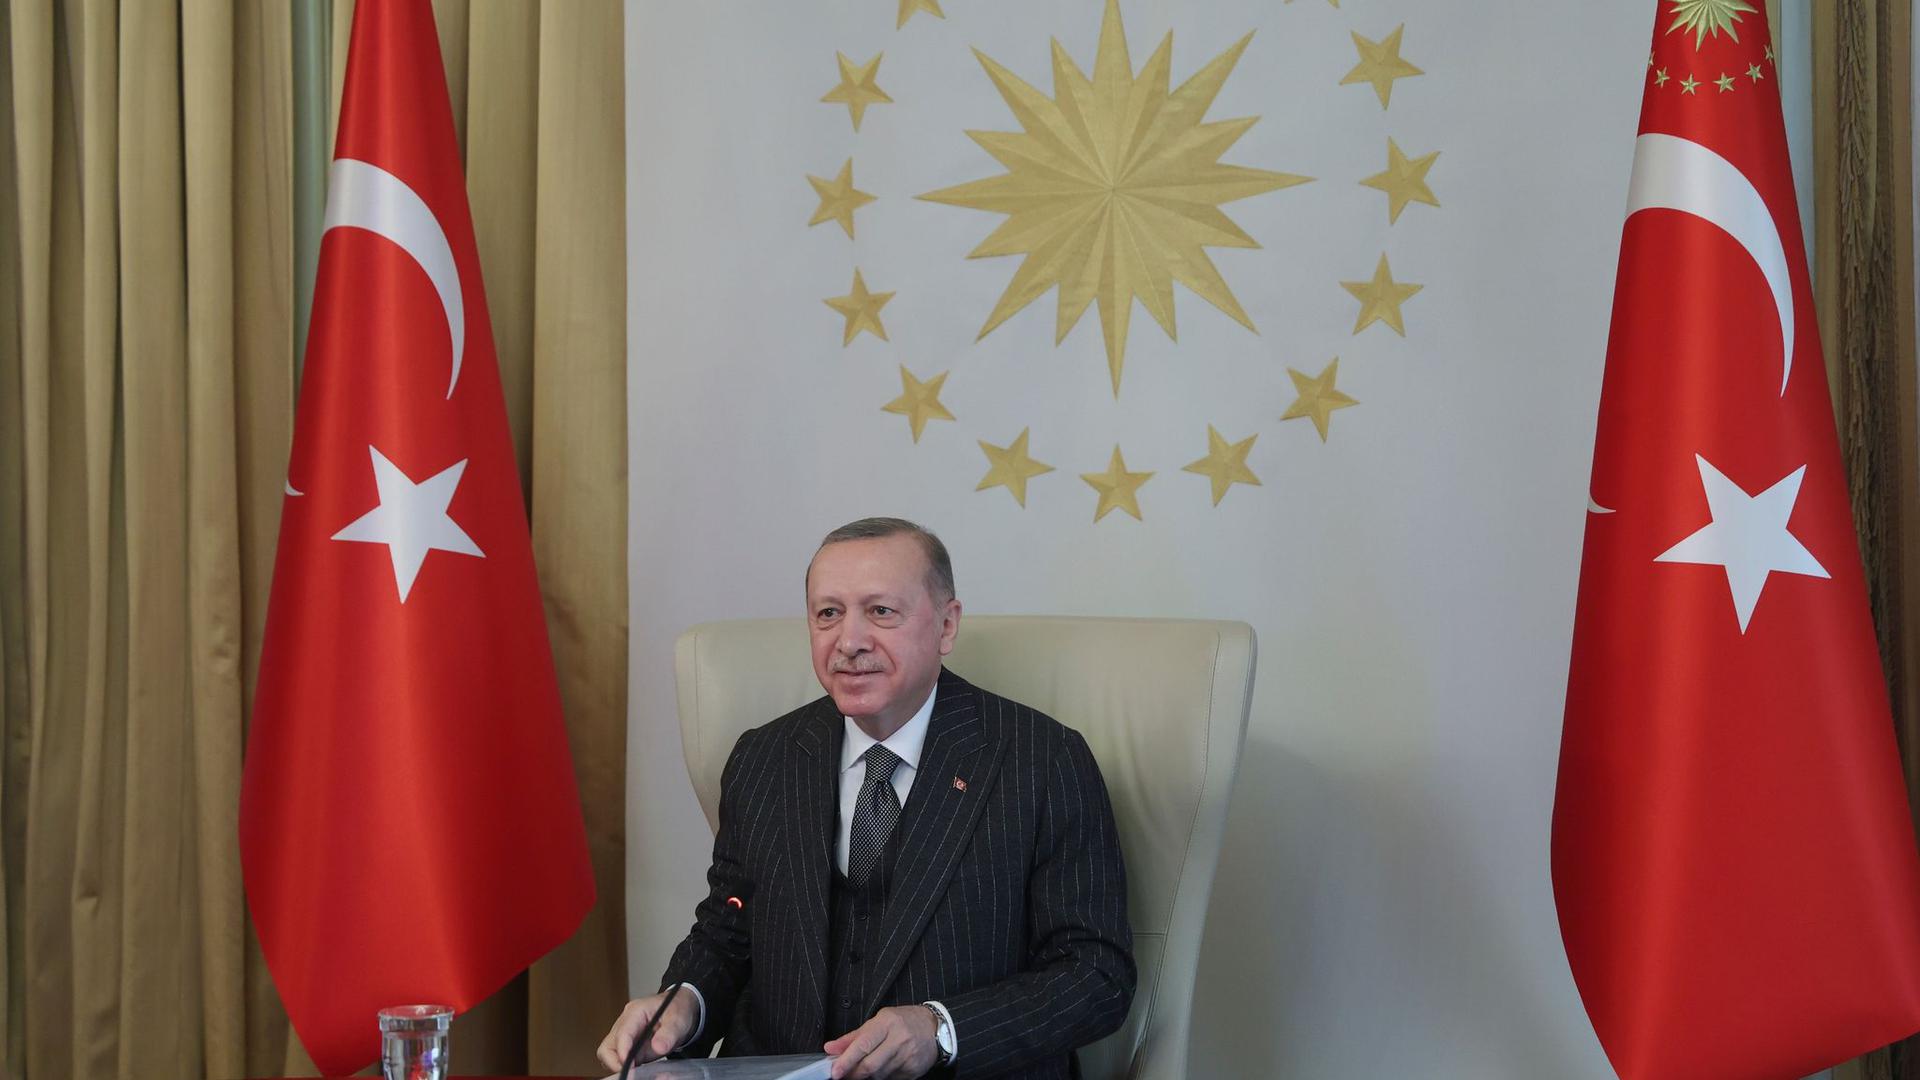 Recep Tayyip Erdogan, Präsident der Türkei. Das Land ist aus der sogenannten Istanbul-Konvention ausgetreten, die Gewalt an Frauen verhindern und bekämpfen soll.